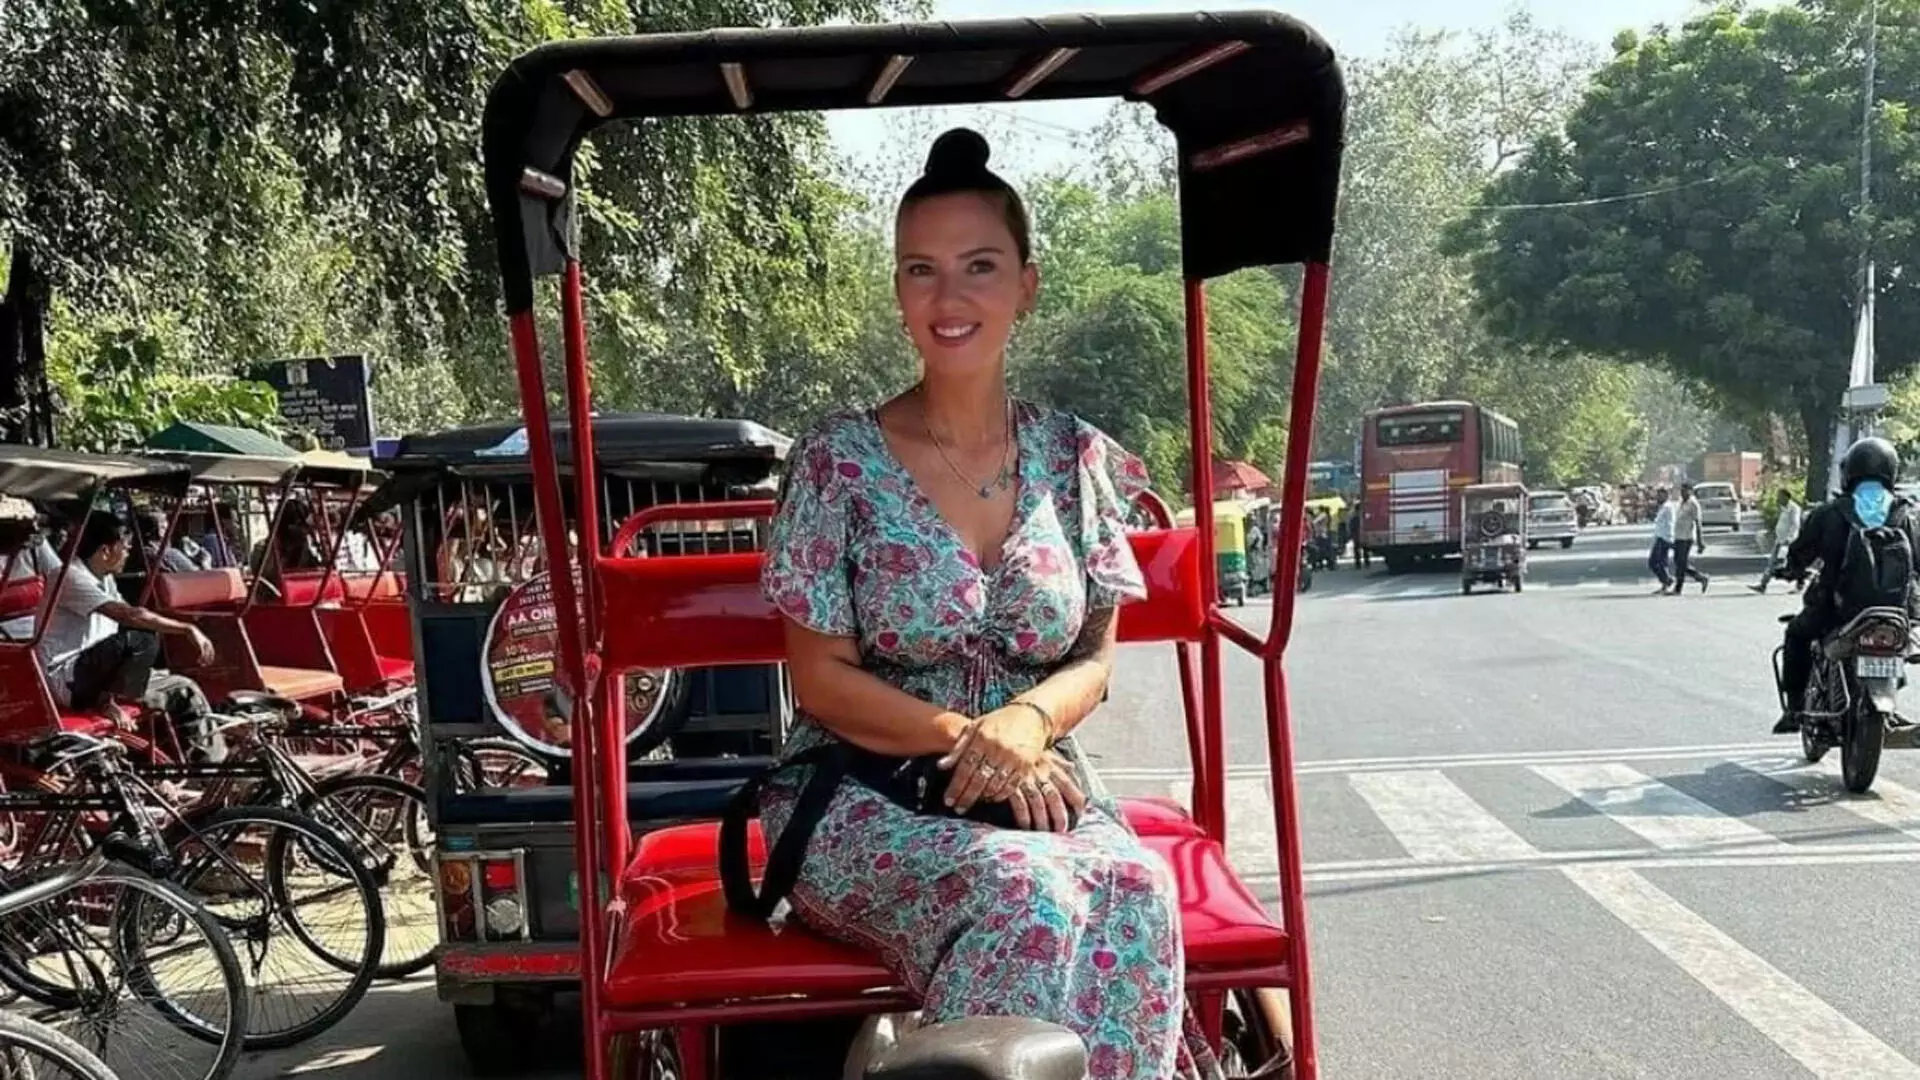 क्या स्कारलेट जोहानसन दिल्ली में हैं? जानिए अभिनेत्री की वायरल तस्वीर का असली सच